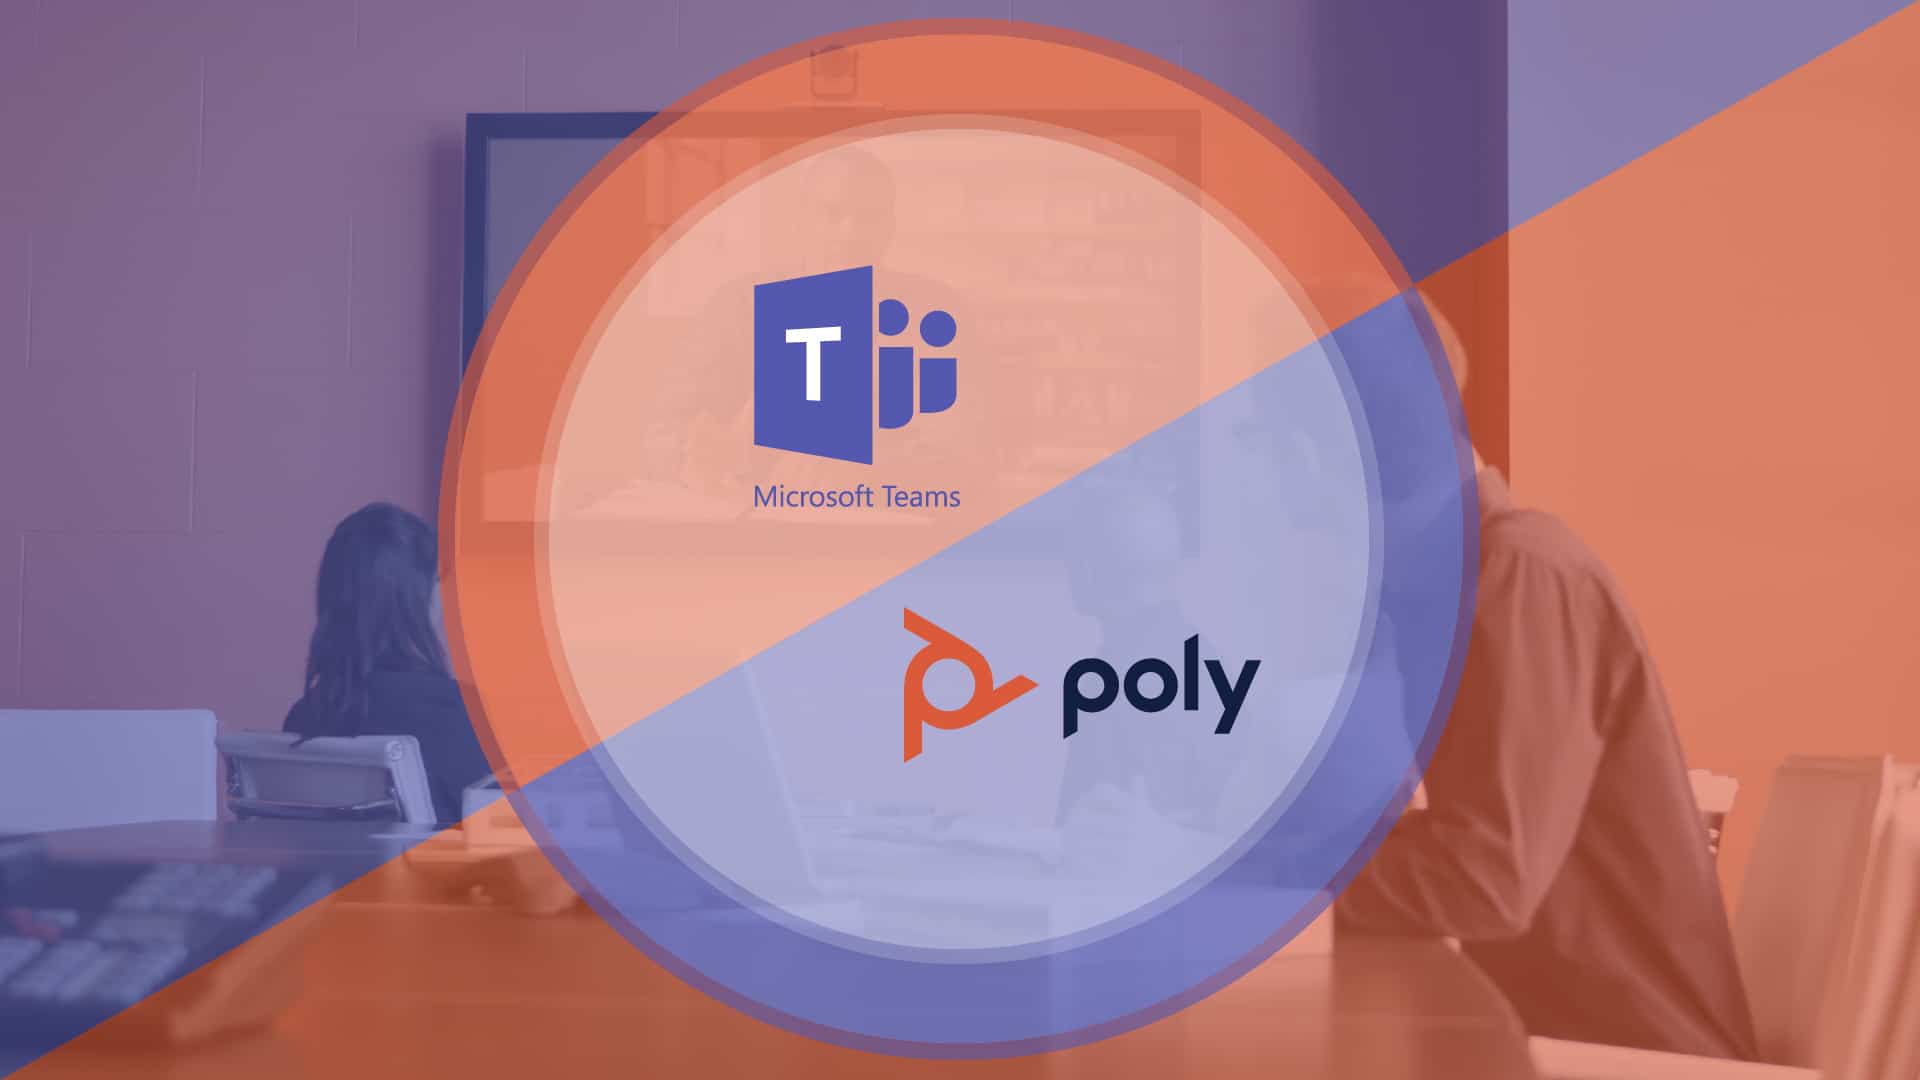 Hãy khám phá hình ảnh liên quan đến Polycom, đúng như tên gọi của nó, nó sẽ mang lại trải nghiệm âm thanh và hình ảnh tuyệt vời nhất cho công việc của bạn. Với Polycom, bạn có thể tận hưởng cuộc gọi video chất lượng cao với đối tác và khách hàng mọi lúc mọi nơi.